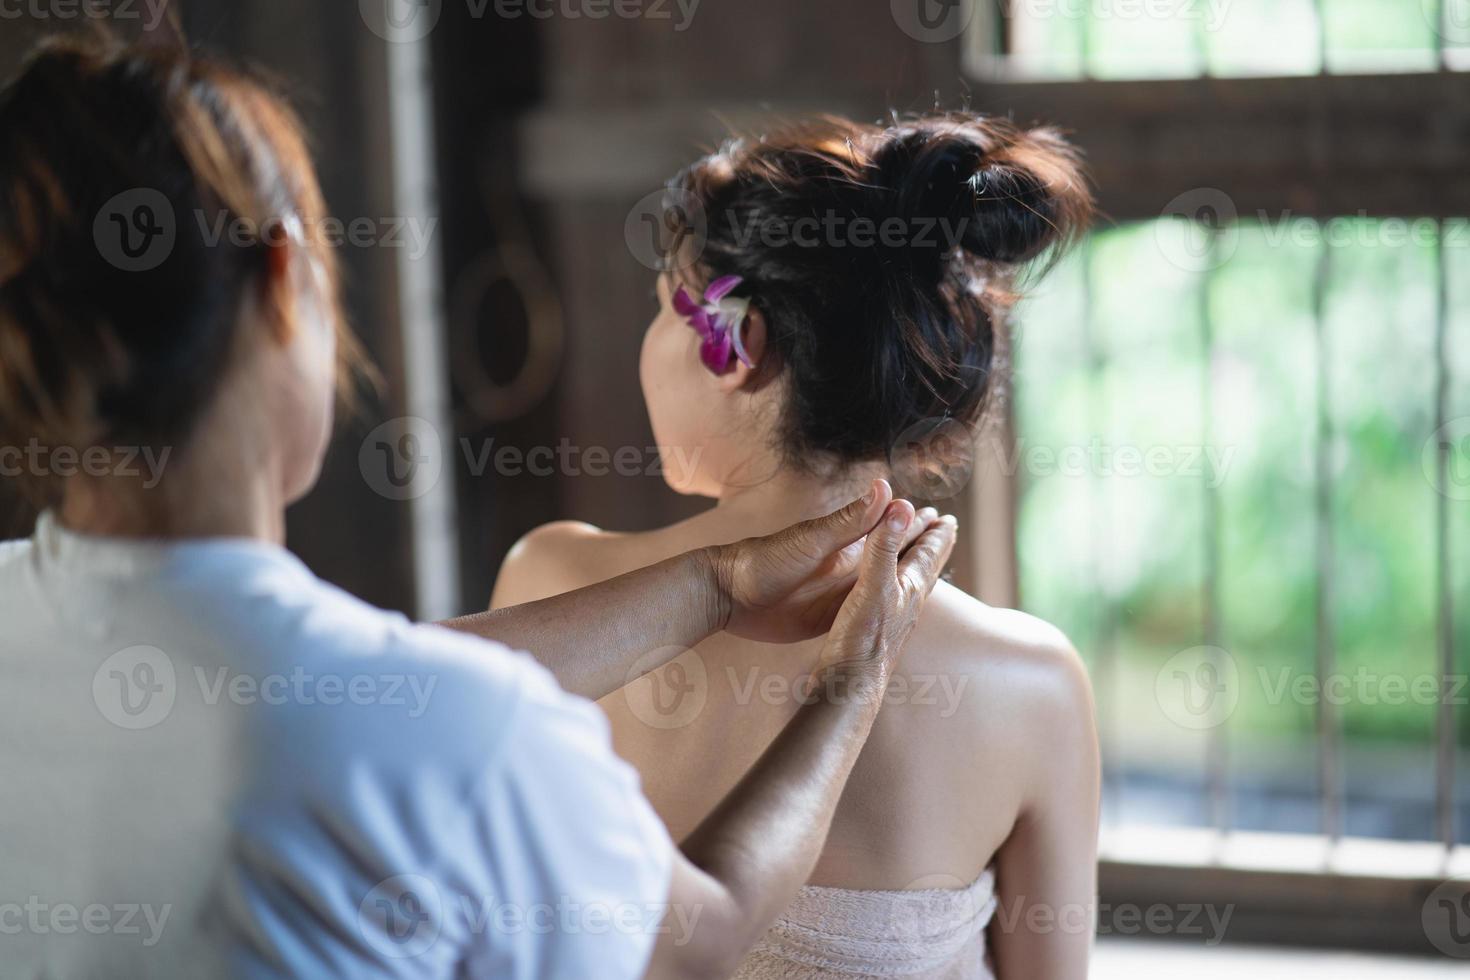 massagem e spa tratamento relaxante do estilo tradicional de massagem tailandesa da síndrome do escritório. asain massagista feminina fazendo massagem trata dor nas costas, dor no braço e estresse para mulher de escritório cansada do trabalho. foto